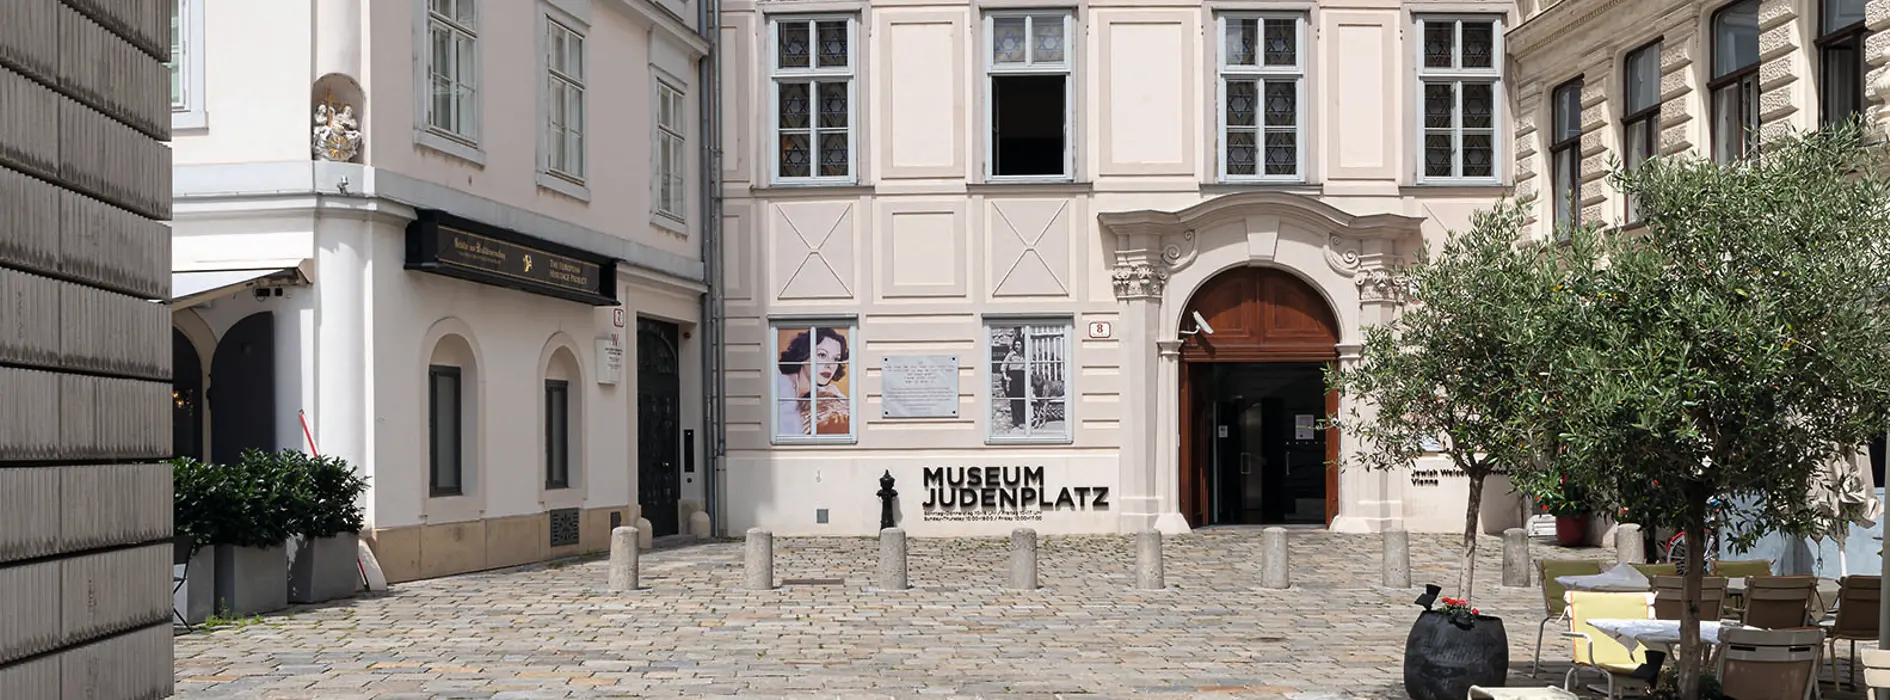 Музей Юденплац